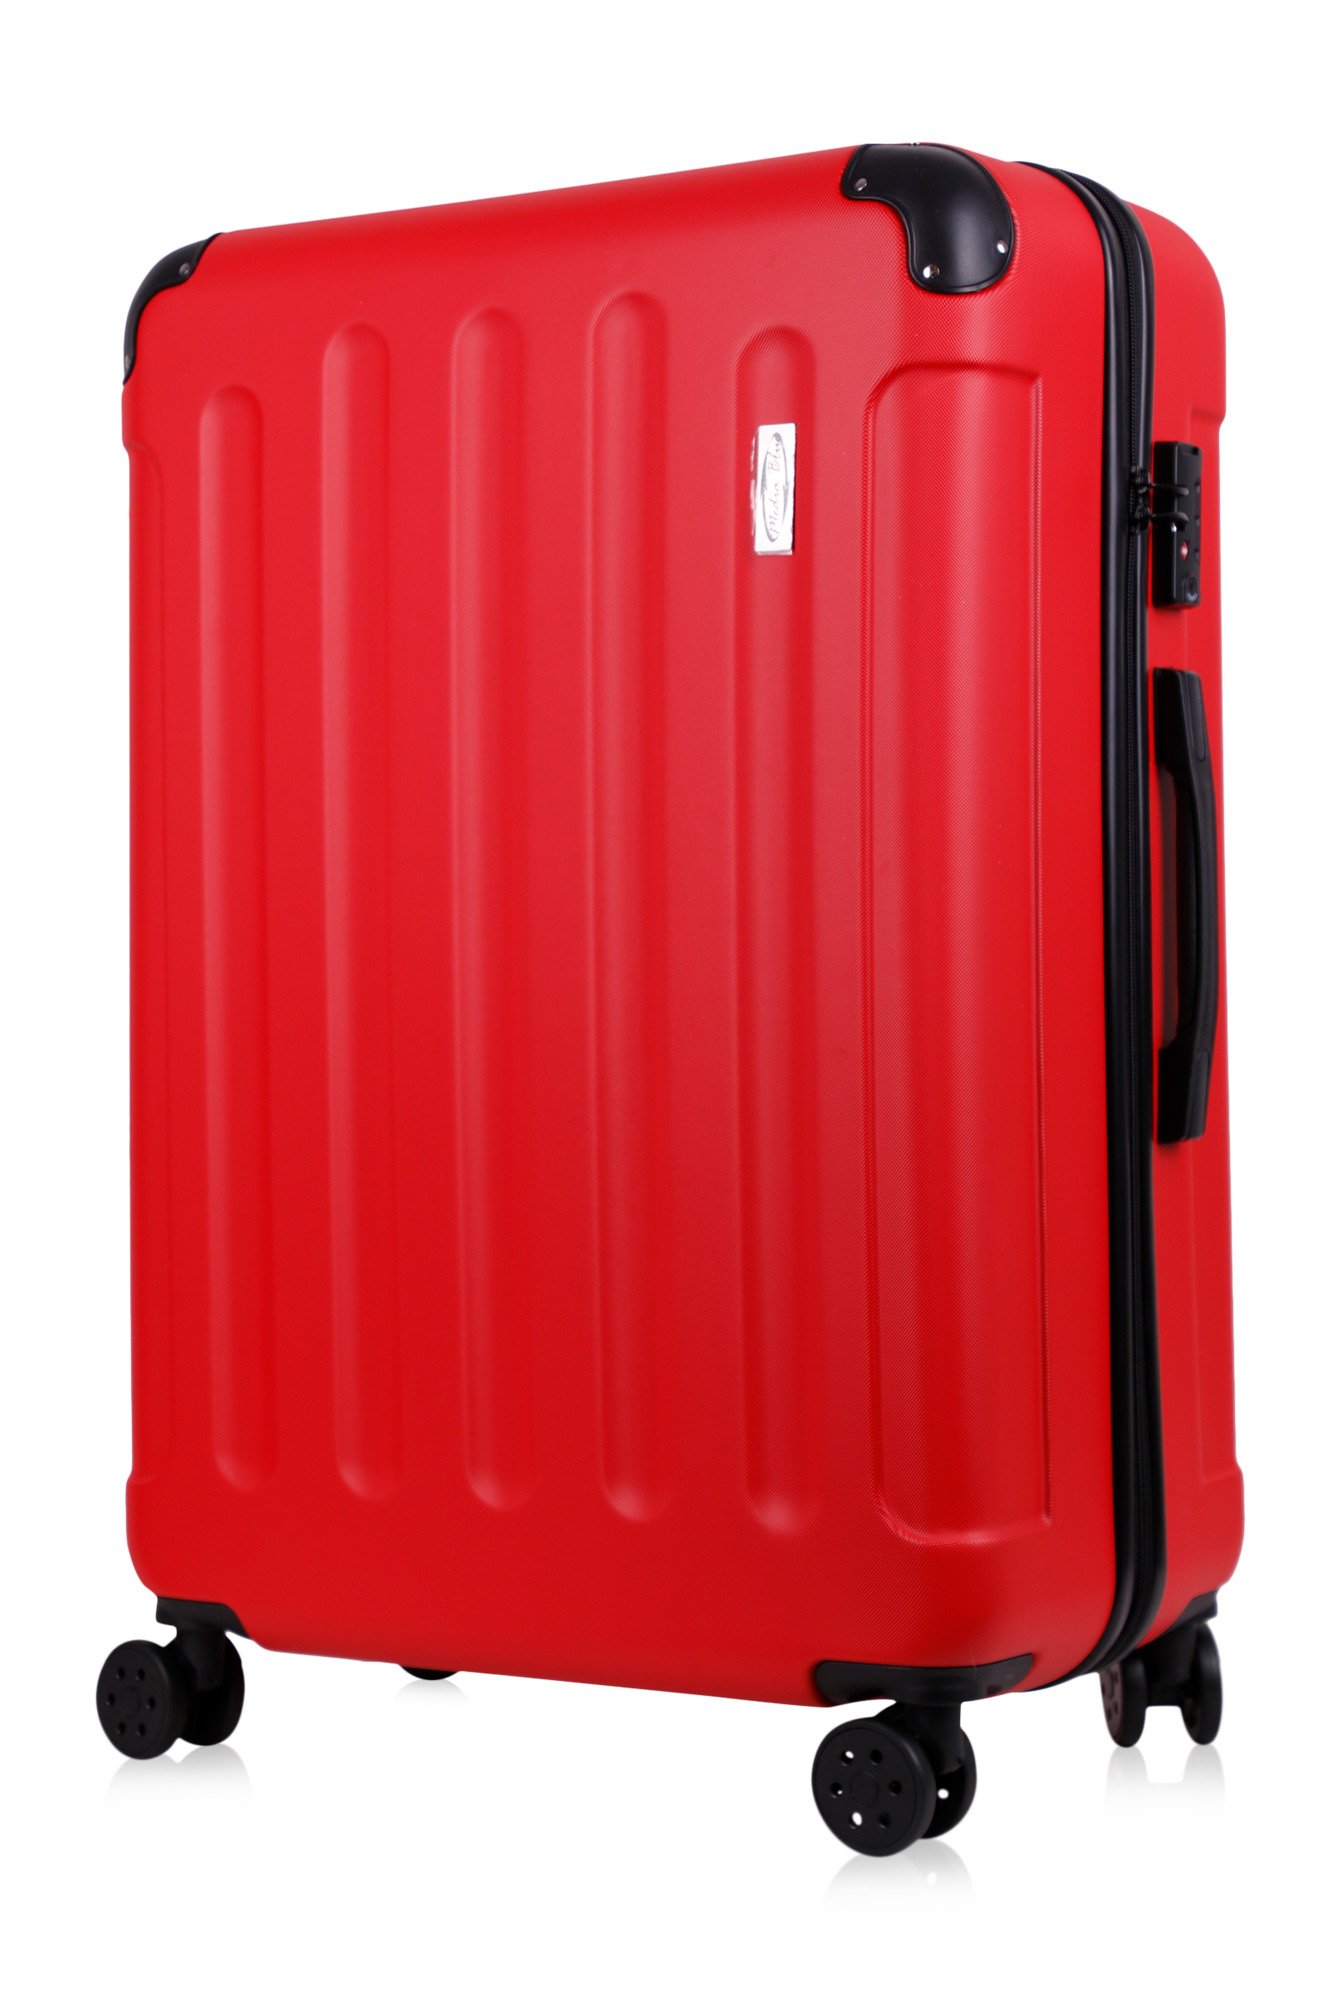 Koffer & Reisekoffer mit 4 Doppelrollen & Teleskopstange und TSA Schloß - Hartschalenkoffer 68x46x28,5 (Red, XL)